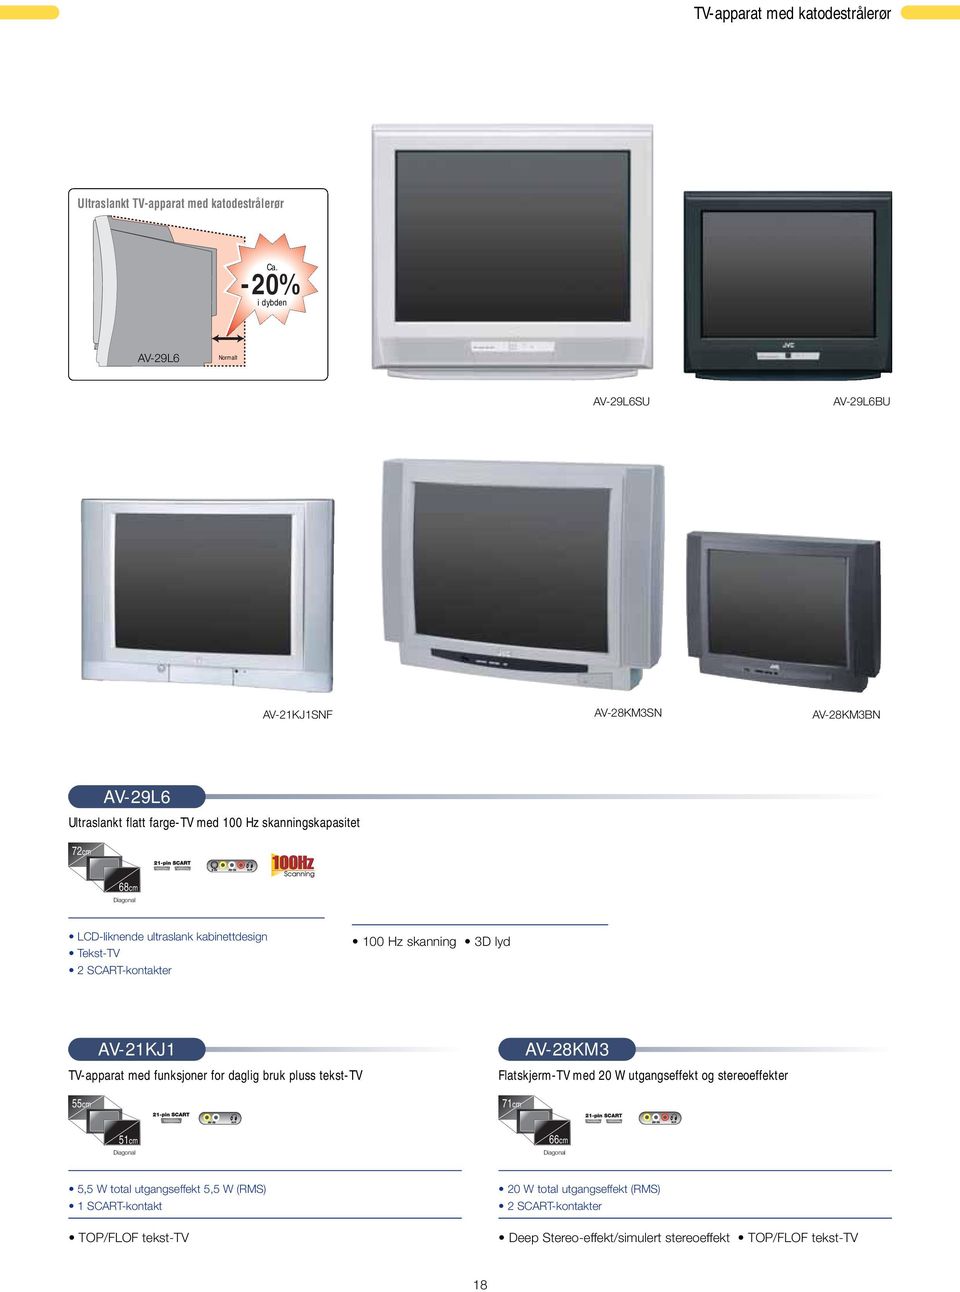 LCD-liknende ultraslank kabinettdesign Tekst-TV 2 SCART-kontakter 100 Hz skanning 3D lyd TV-apparat med funksjoner for daglig bruk pluss tekst-tv 55cm AV-21KJ1